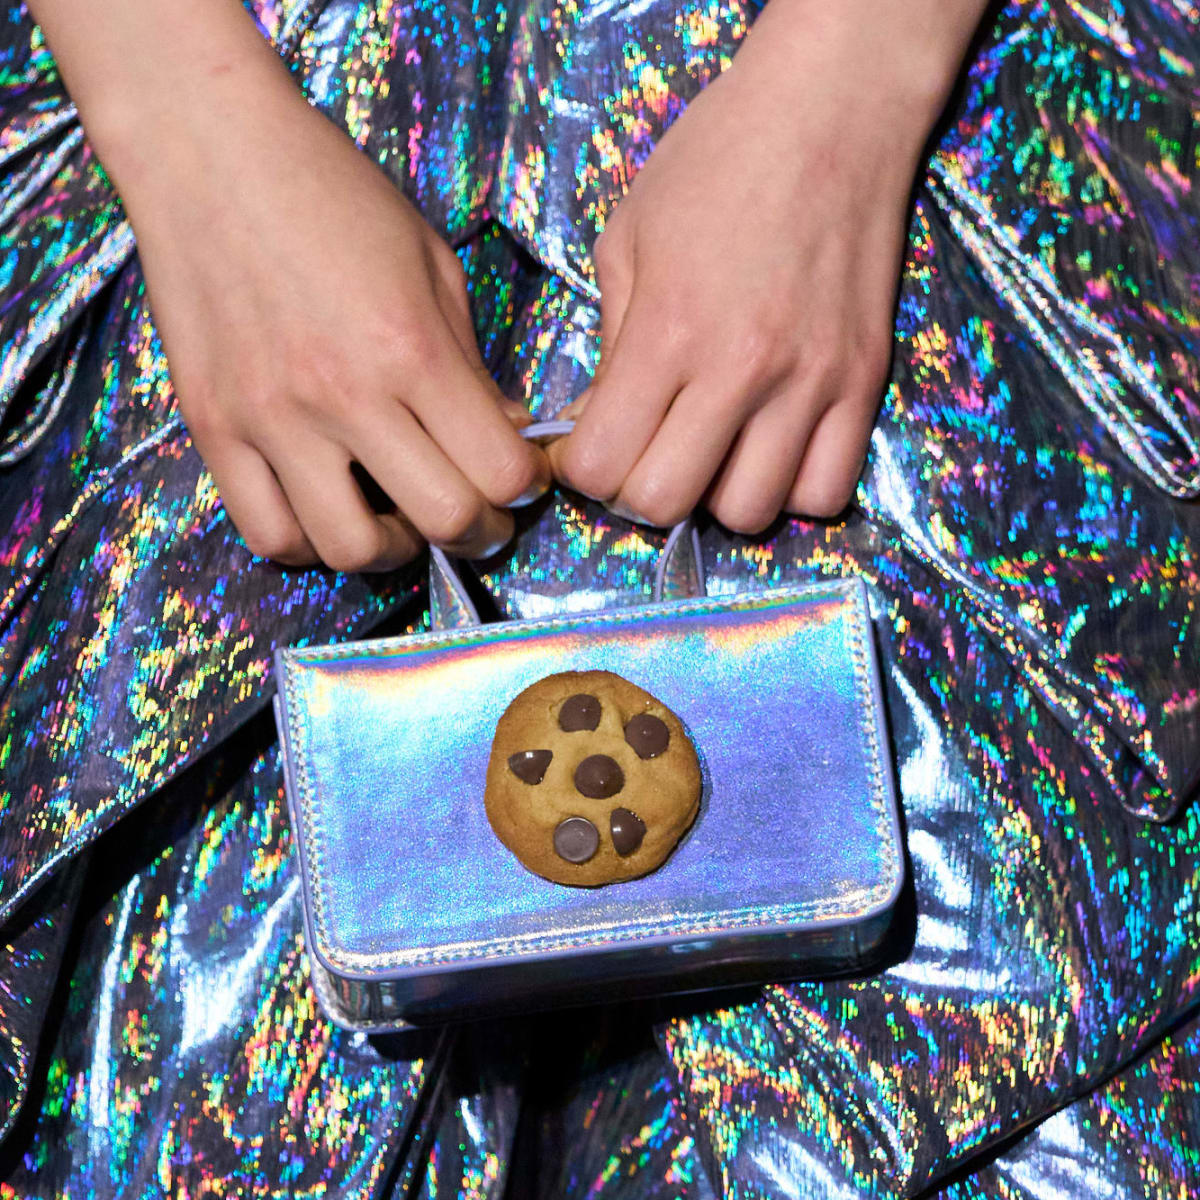 11 Best Handbags For Girls in 2023